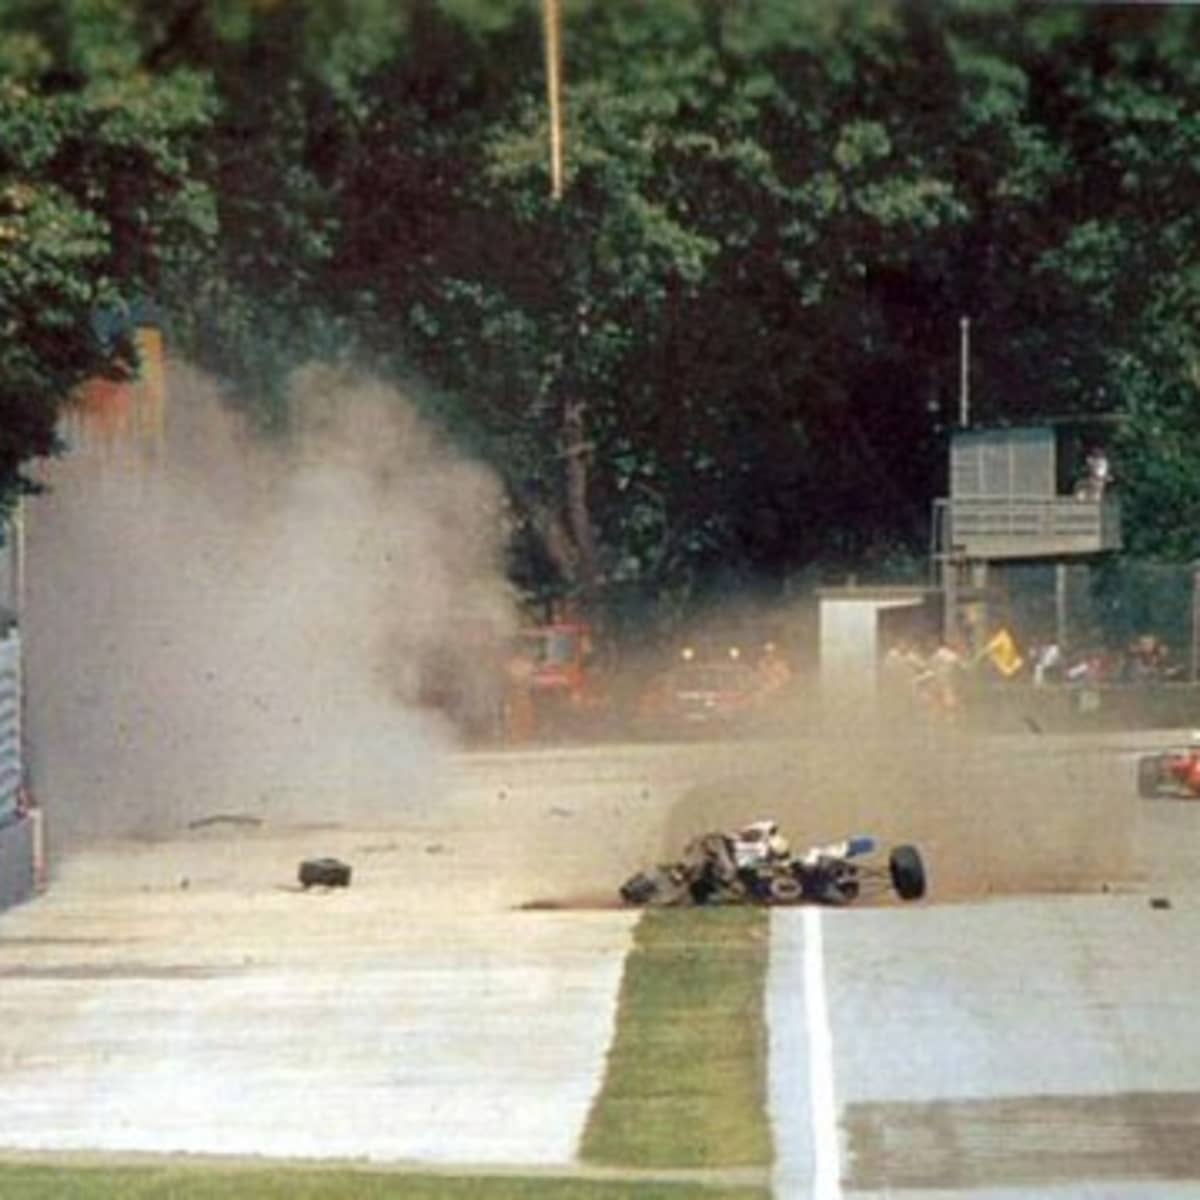 The Tragic Final Days of Ayrton Senna 